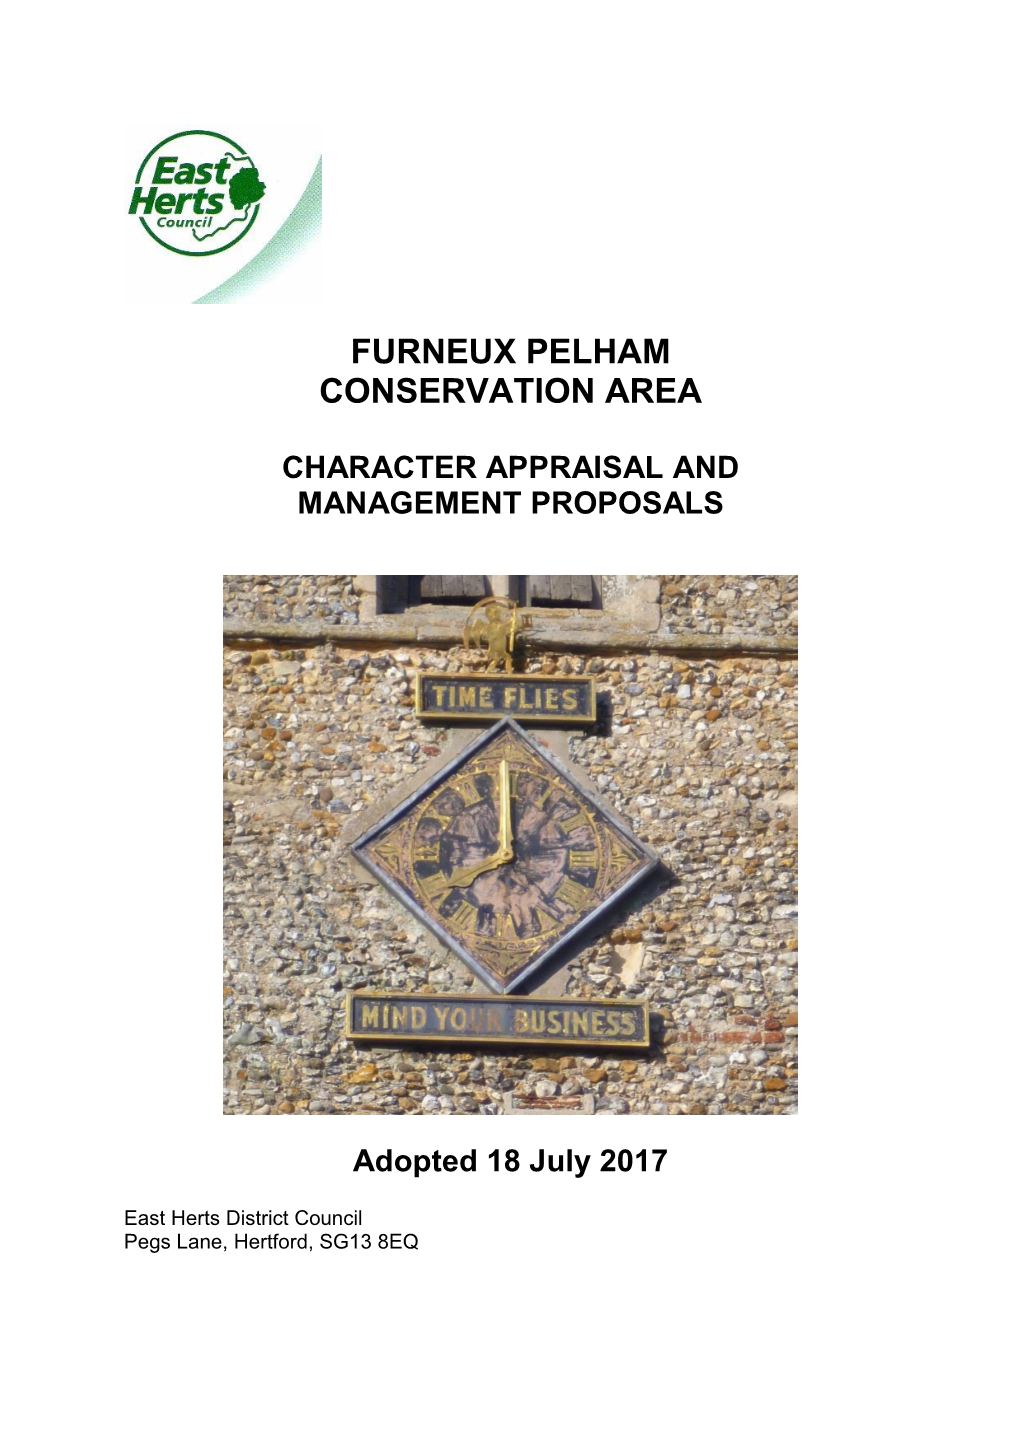 Furneux Pelham Conservation Area Appraisal